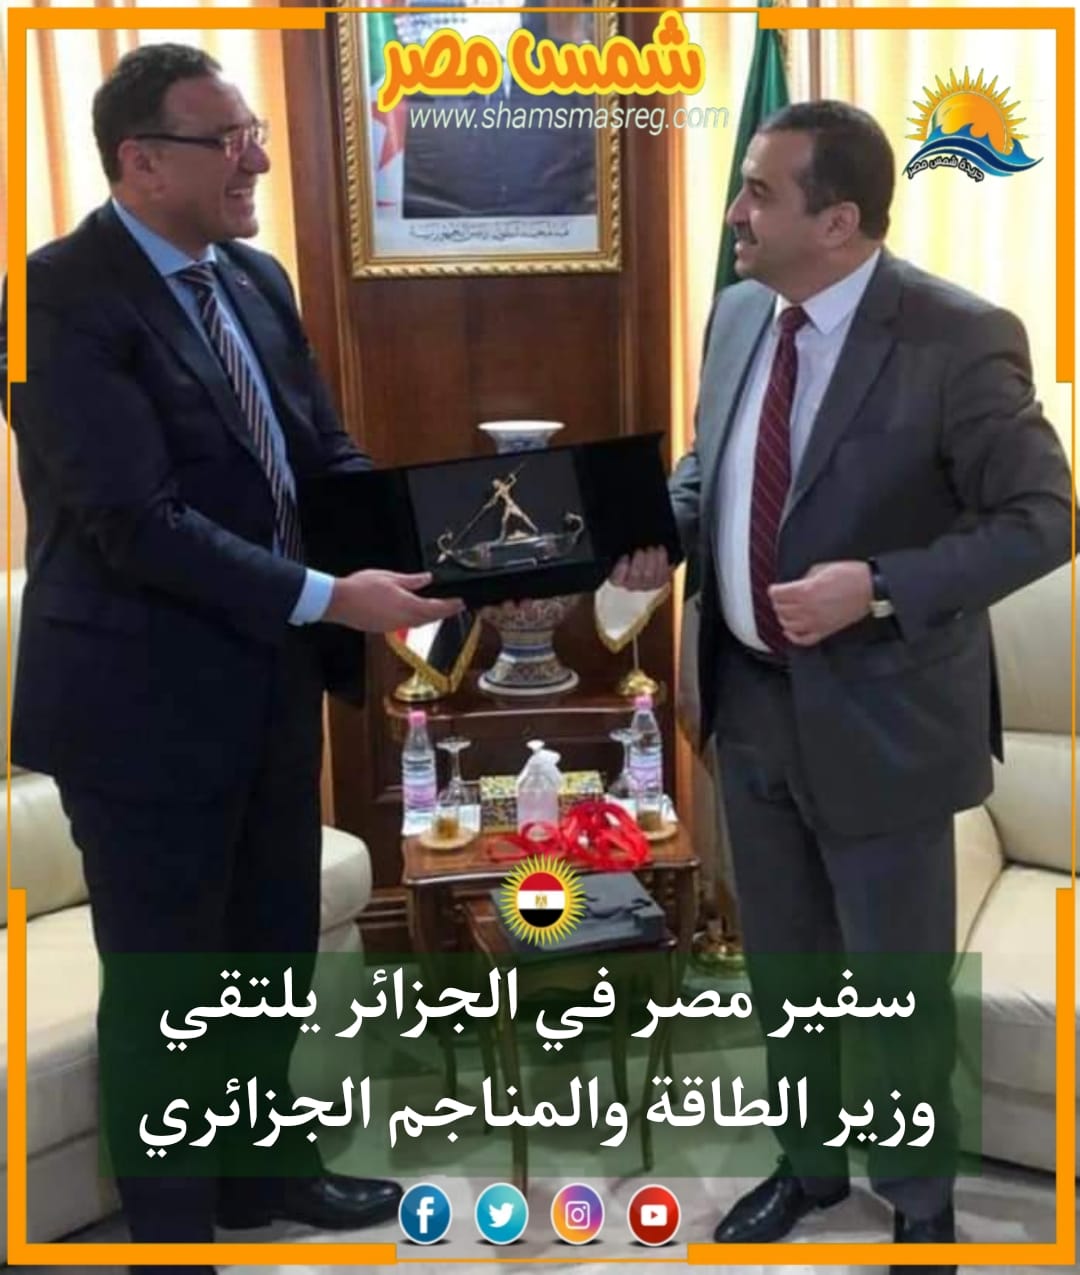 |شمس مصر|..سفير مصر في الجزائر يلتقي وزير الطاقة والمناجم الجزائري.